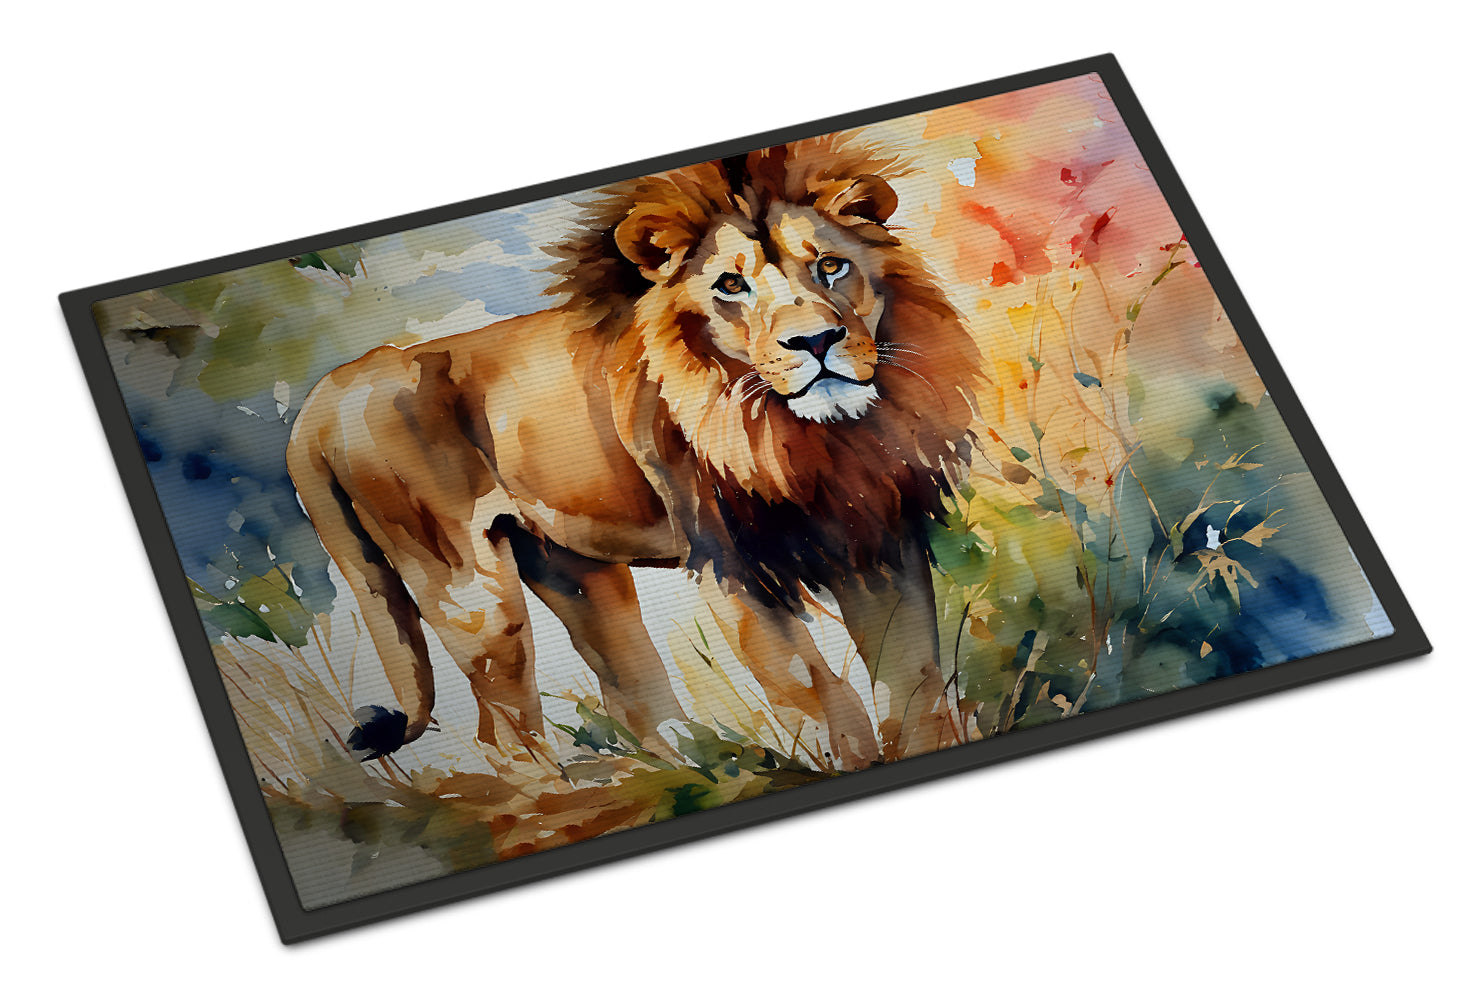 Buy this Lion Doormat